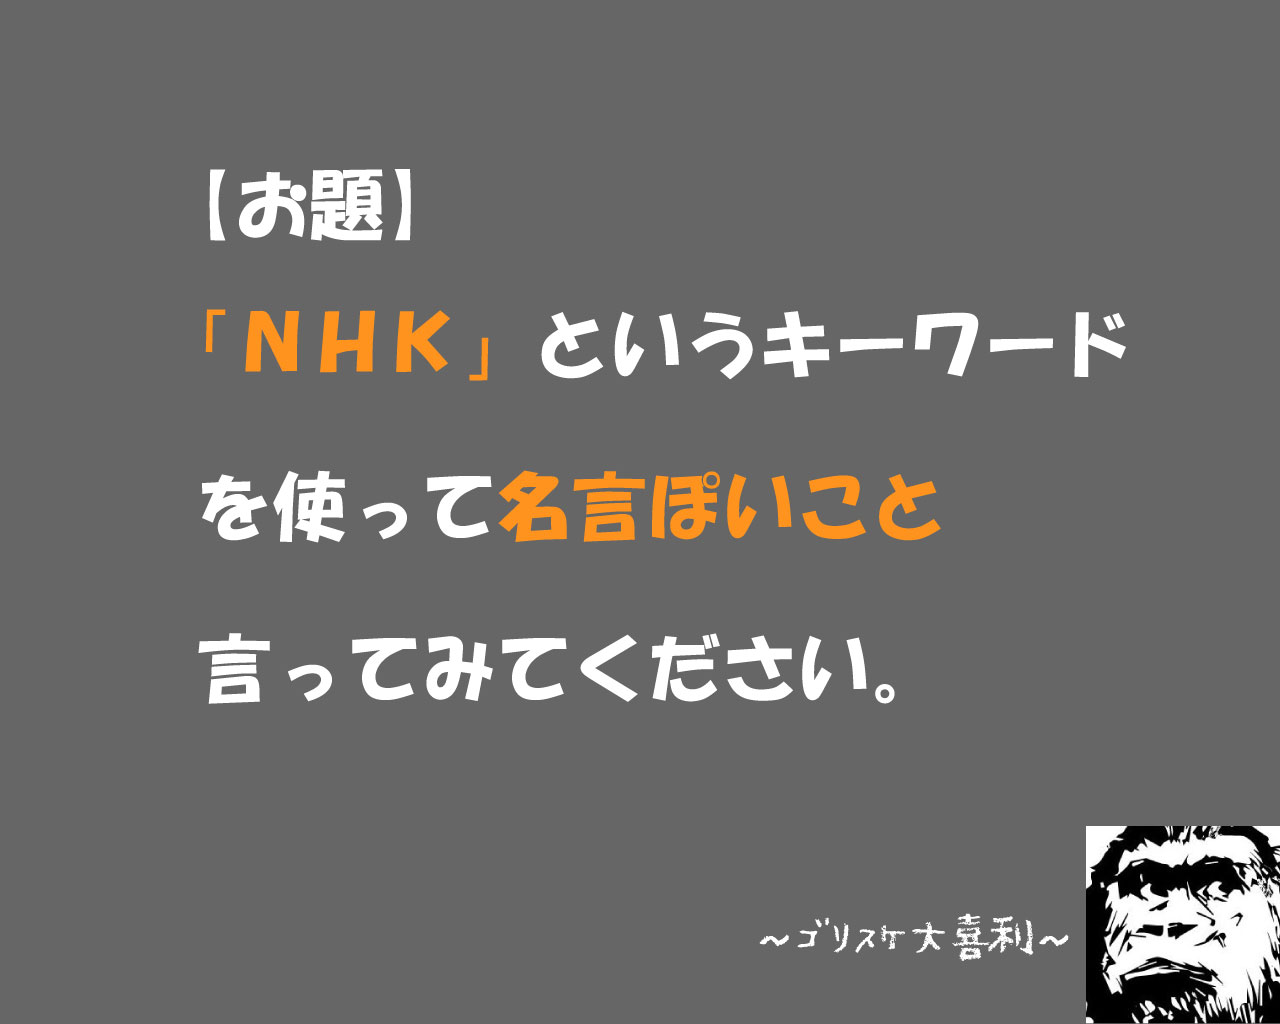 【第58回大喜利】NHKと言うキーワードを使って名言ぽいこと言って